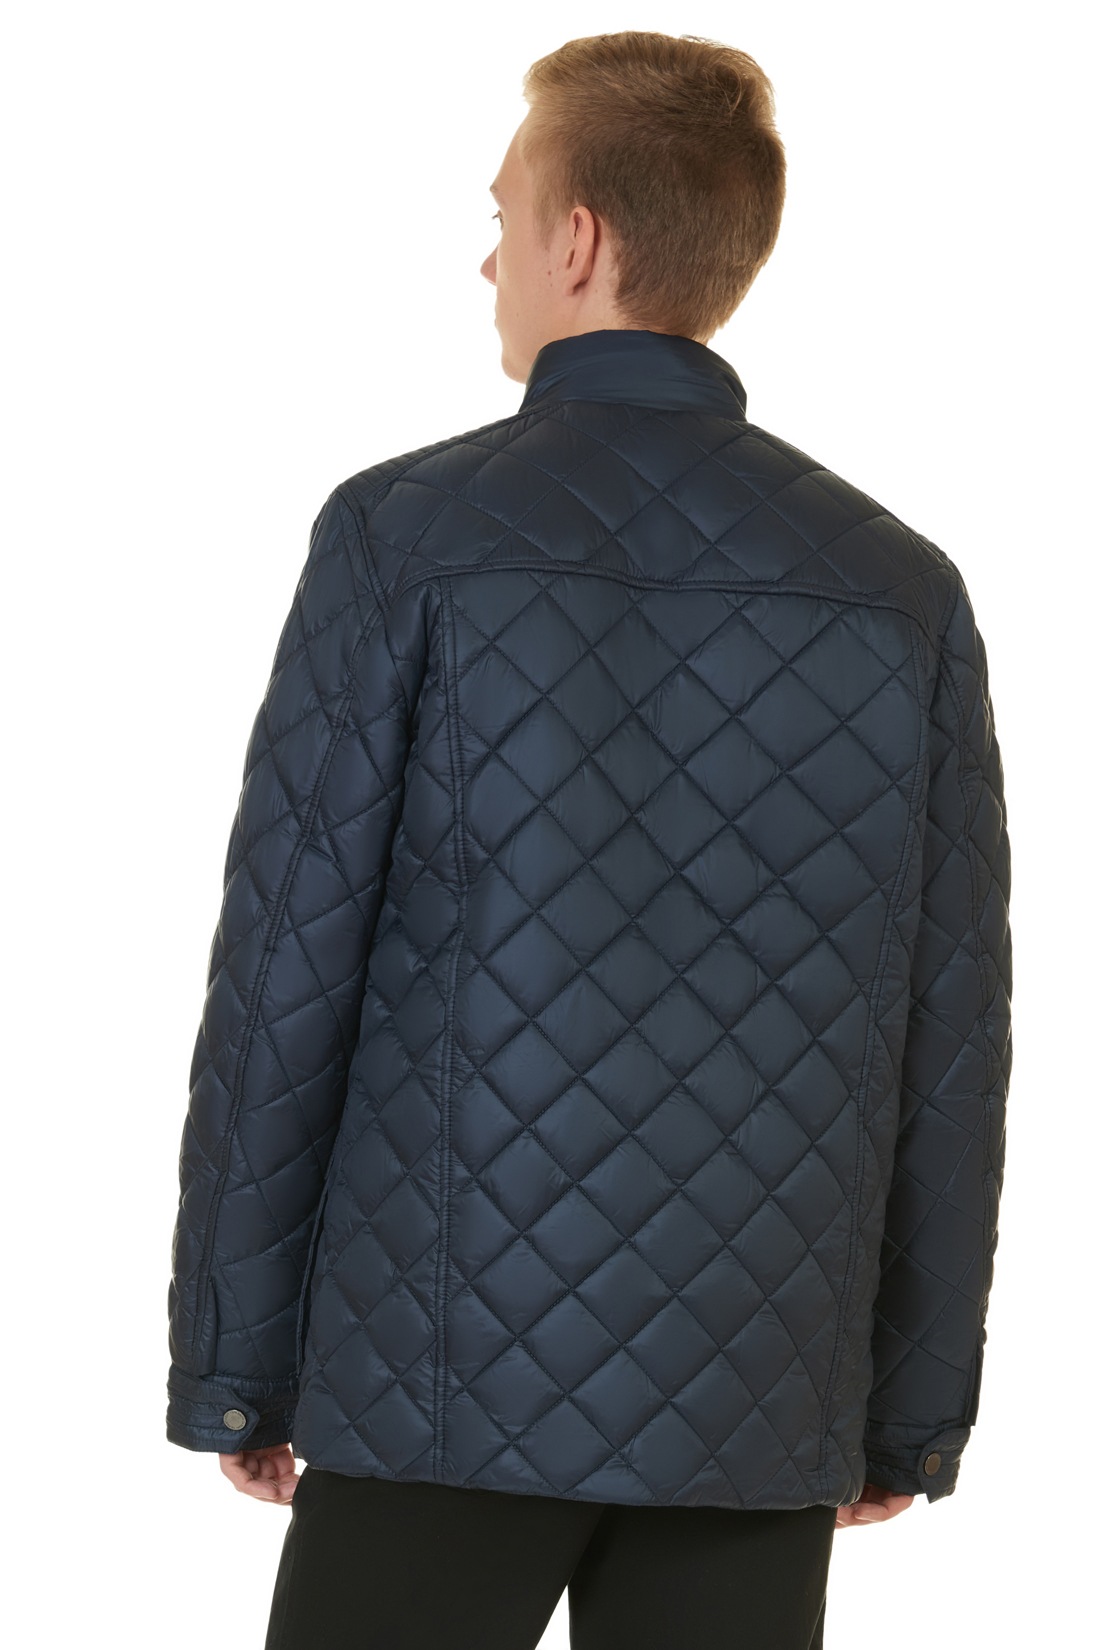 Стёганая куртка с металлической фурнитурой (арт. baon B537550), размер XXL, цвет синий Стёганая куртка с металлической фурнитурой (арт. baon B537550) - фото 2